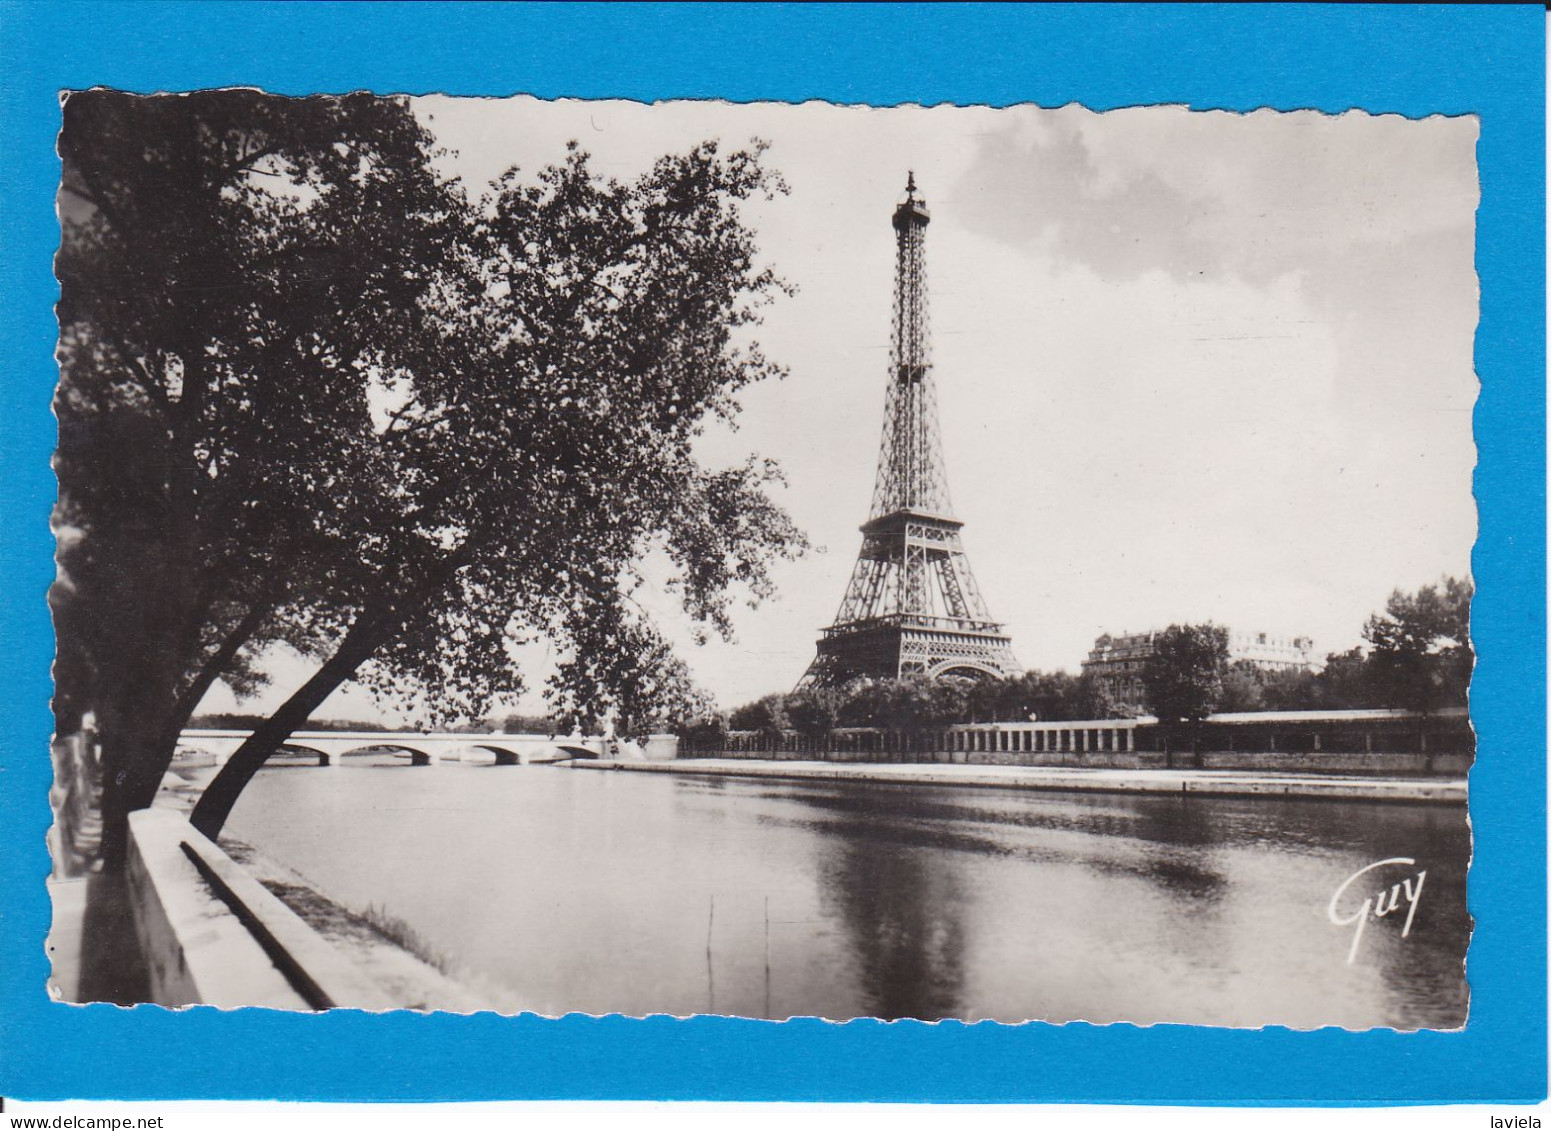 75 PARIS 7e - La Tour Eiffel Vue De L'avenue De New-York - Eiffelturm